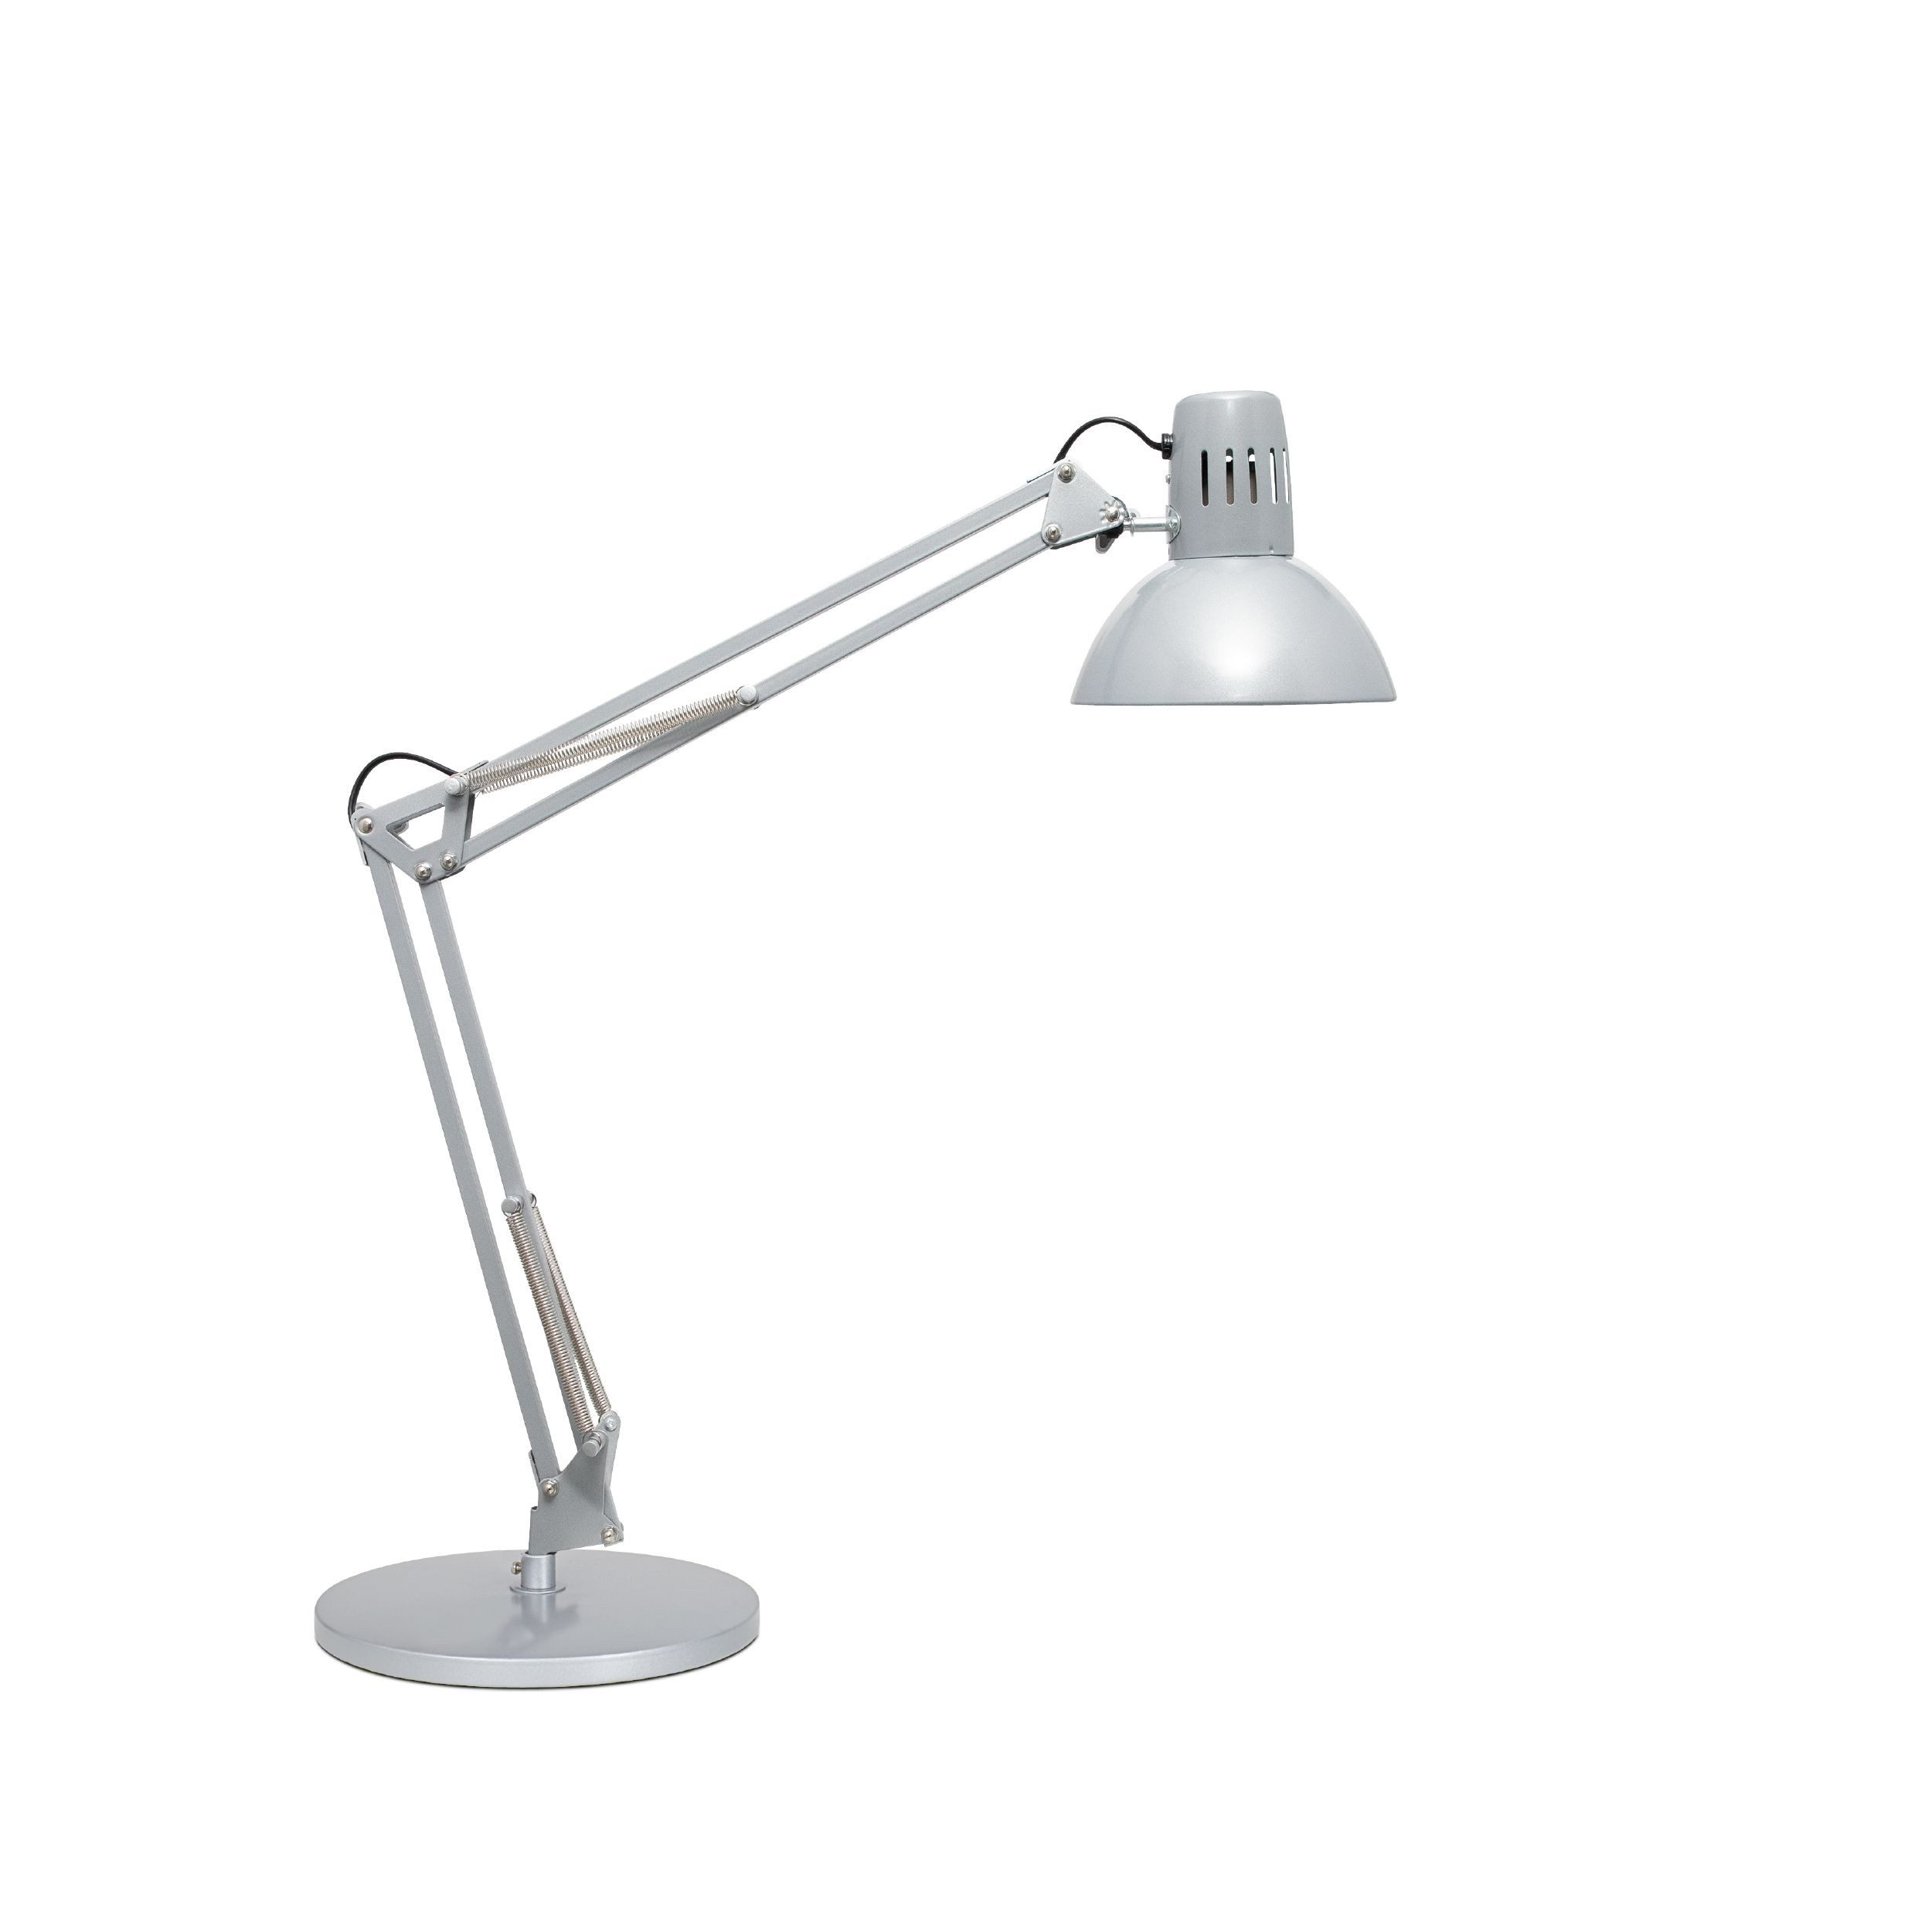 MAUL LED Schreibtischlampe Tischleuchte MAULstudy, mit Standfuß exkl. Leuchtmittel E27, 9,5 Watt LED-Leuchtmittel, Verstellbarer Arm, Verstellbare Höhe